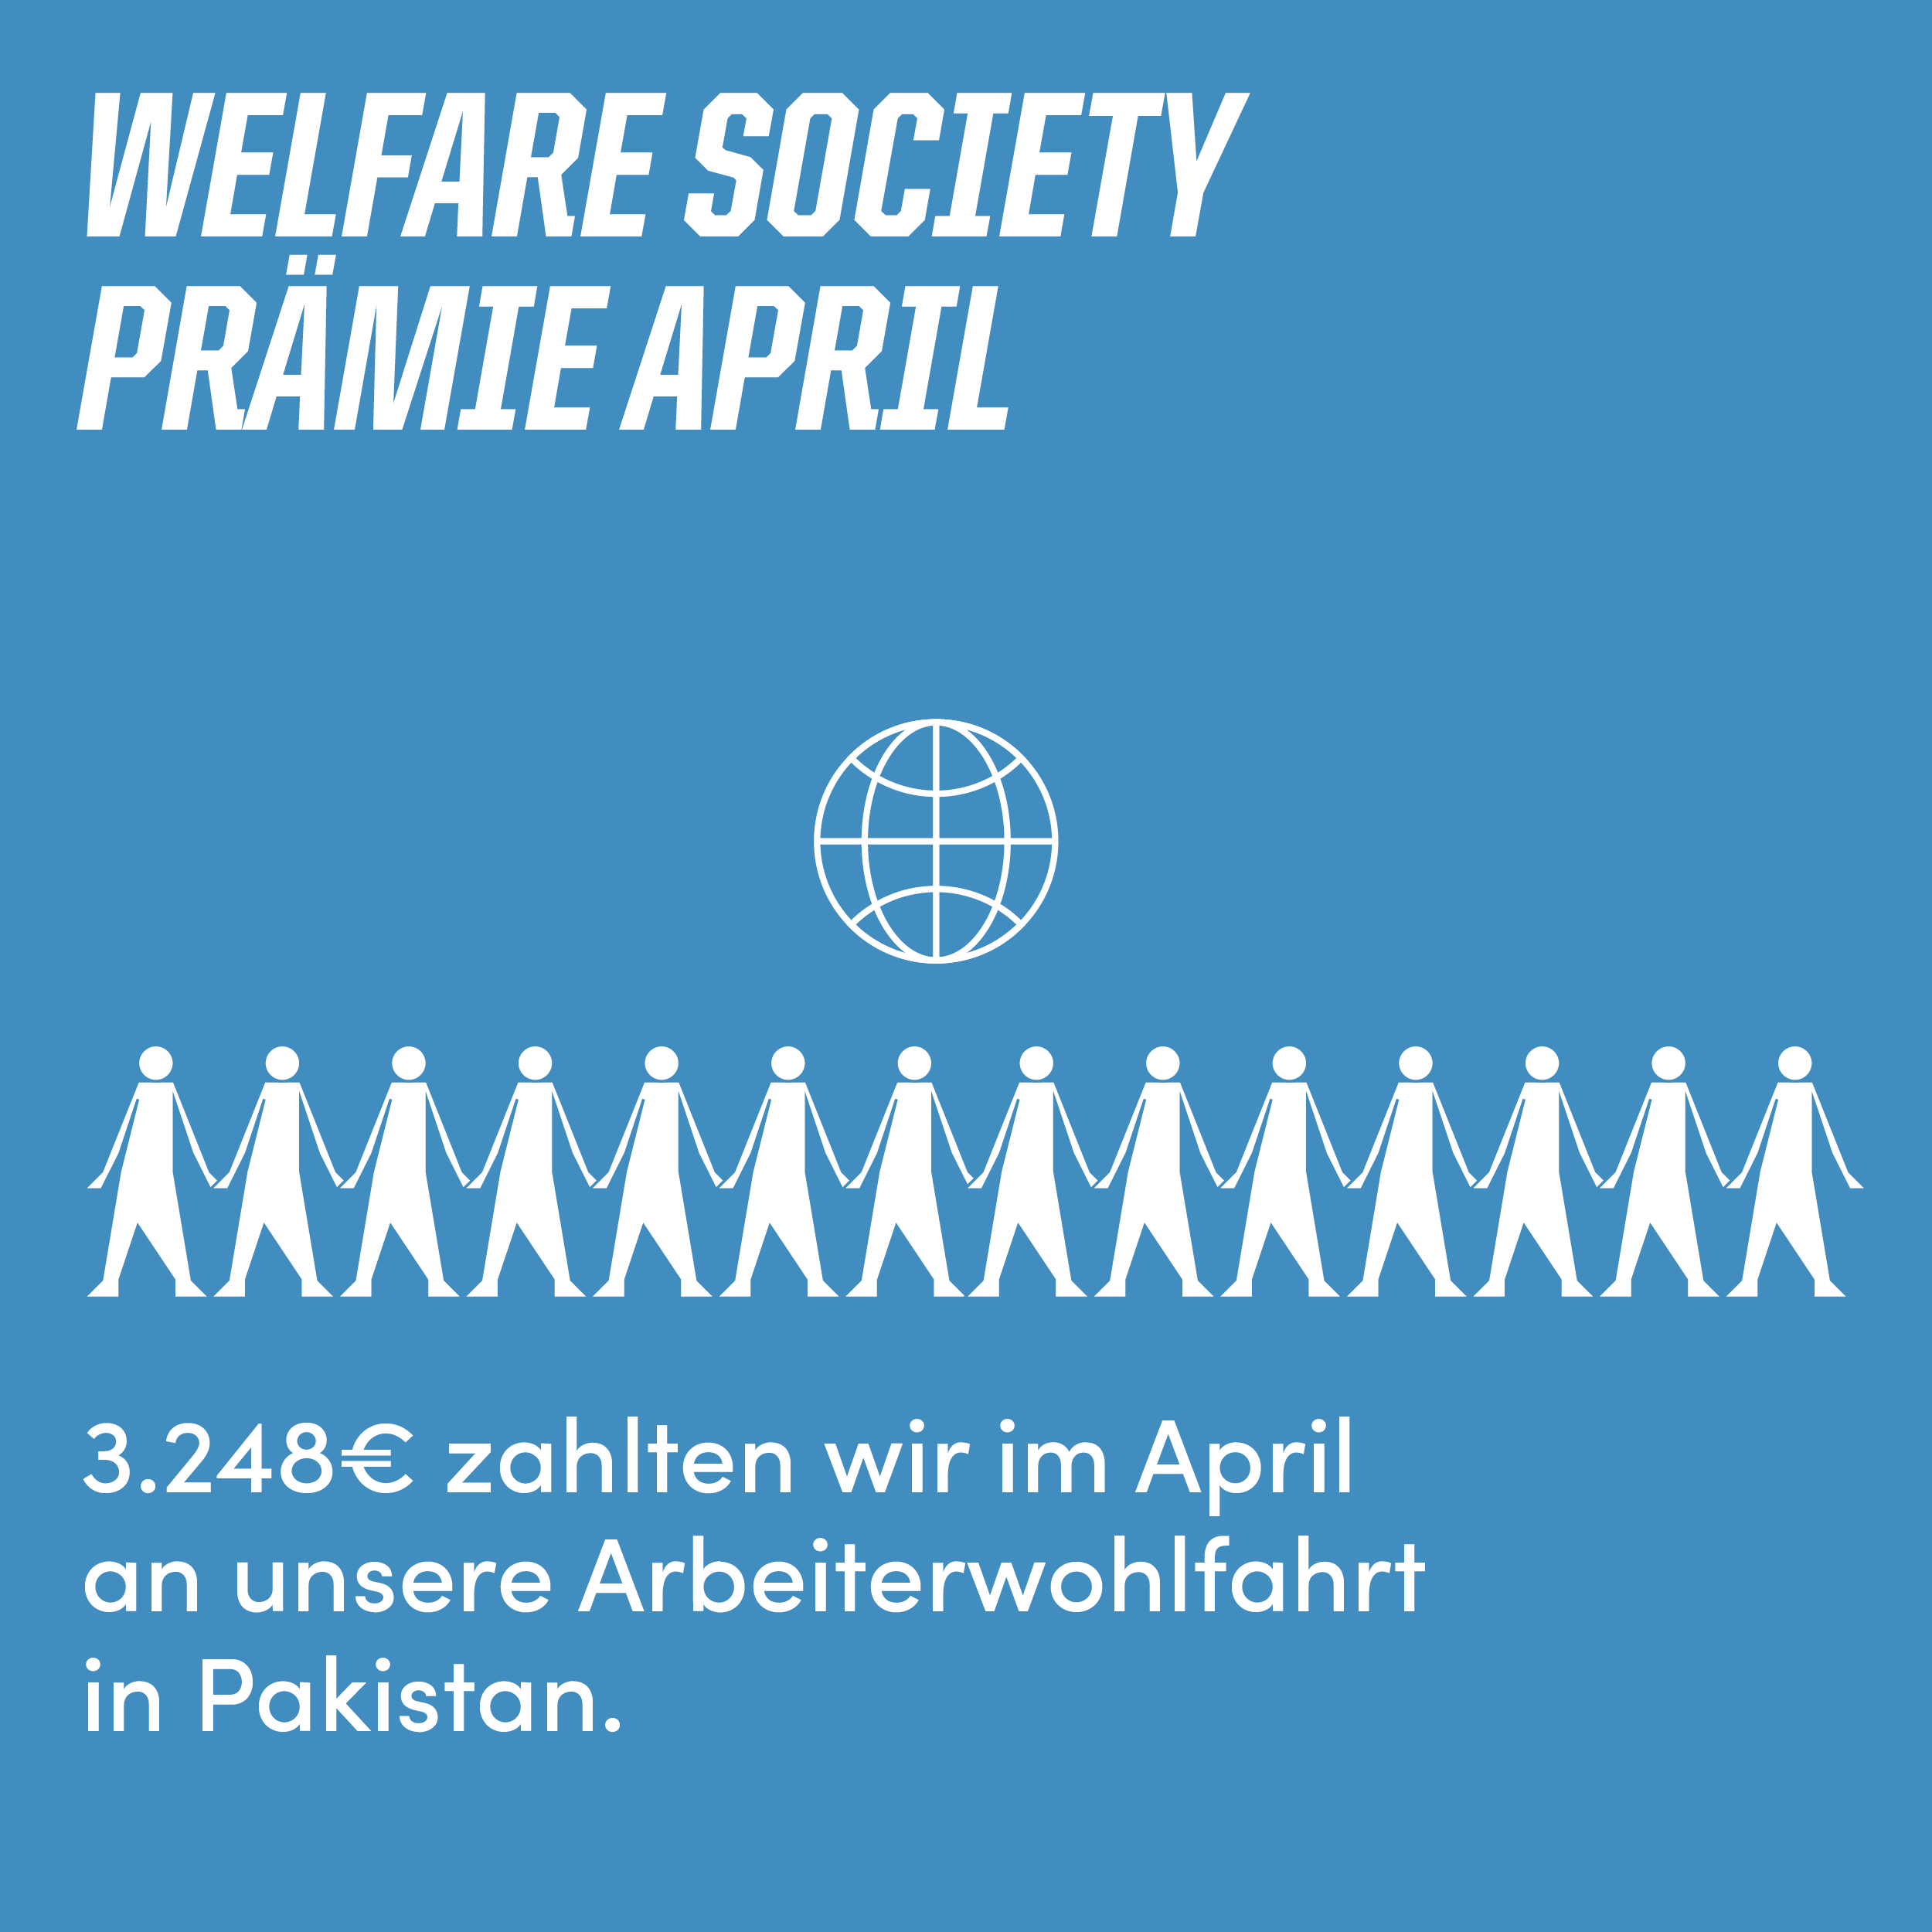 3.248€ zahlt Ethletic im März an die Arbeiterwohlfahrt des Produktionsbetriebes in Pakistan.